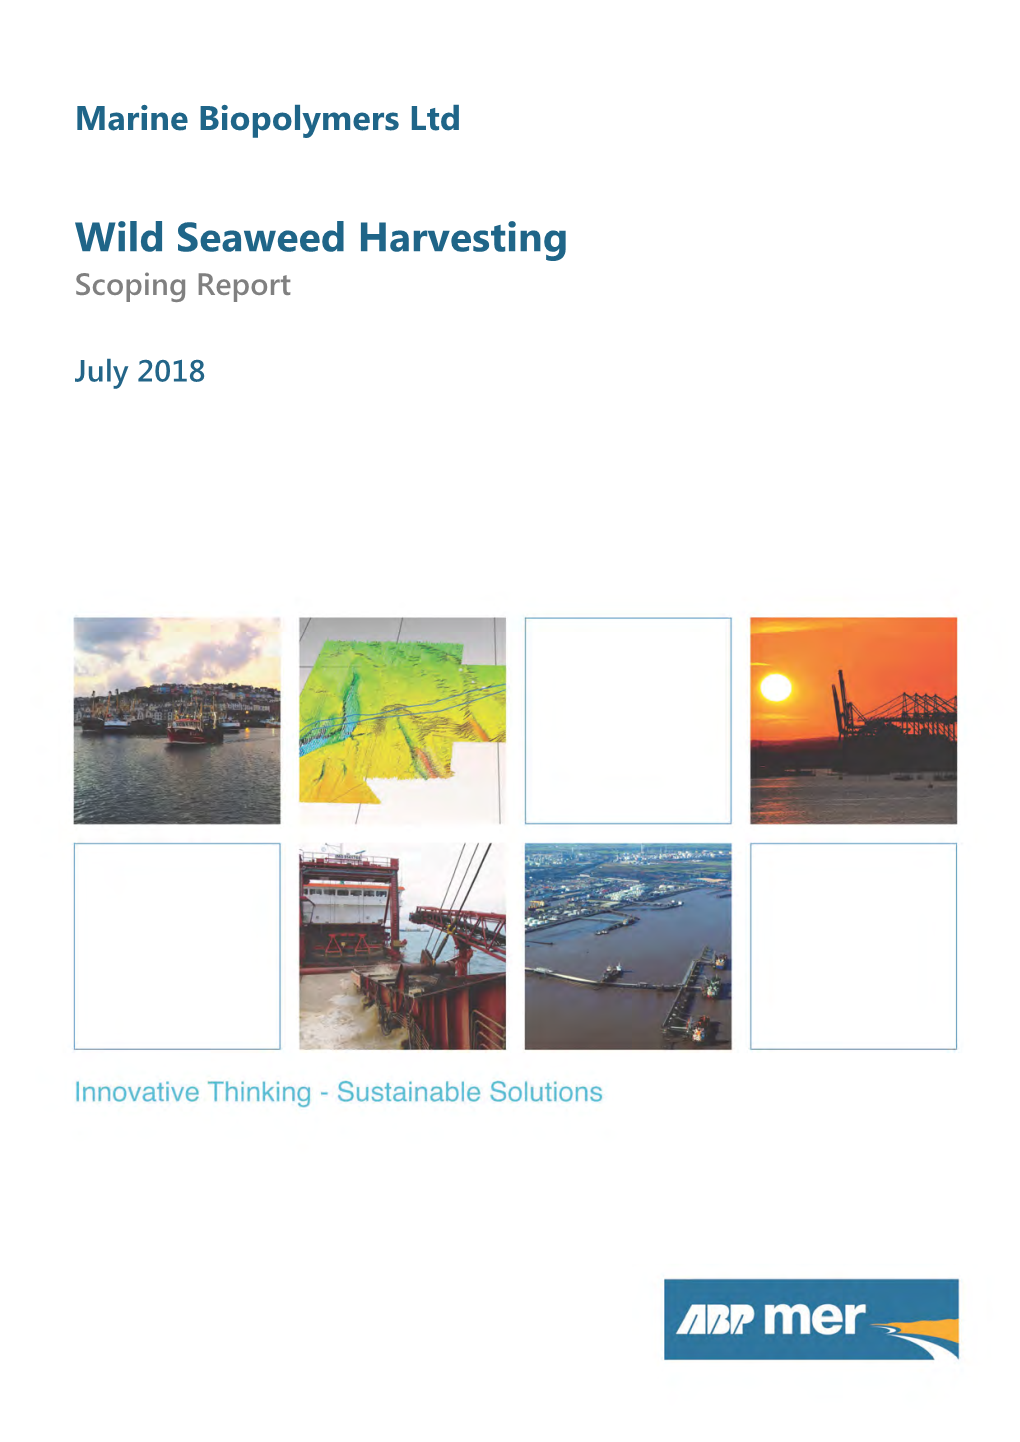 Wild Seaweed Harvesting Scoping Report